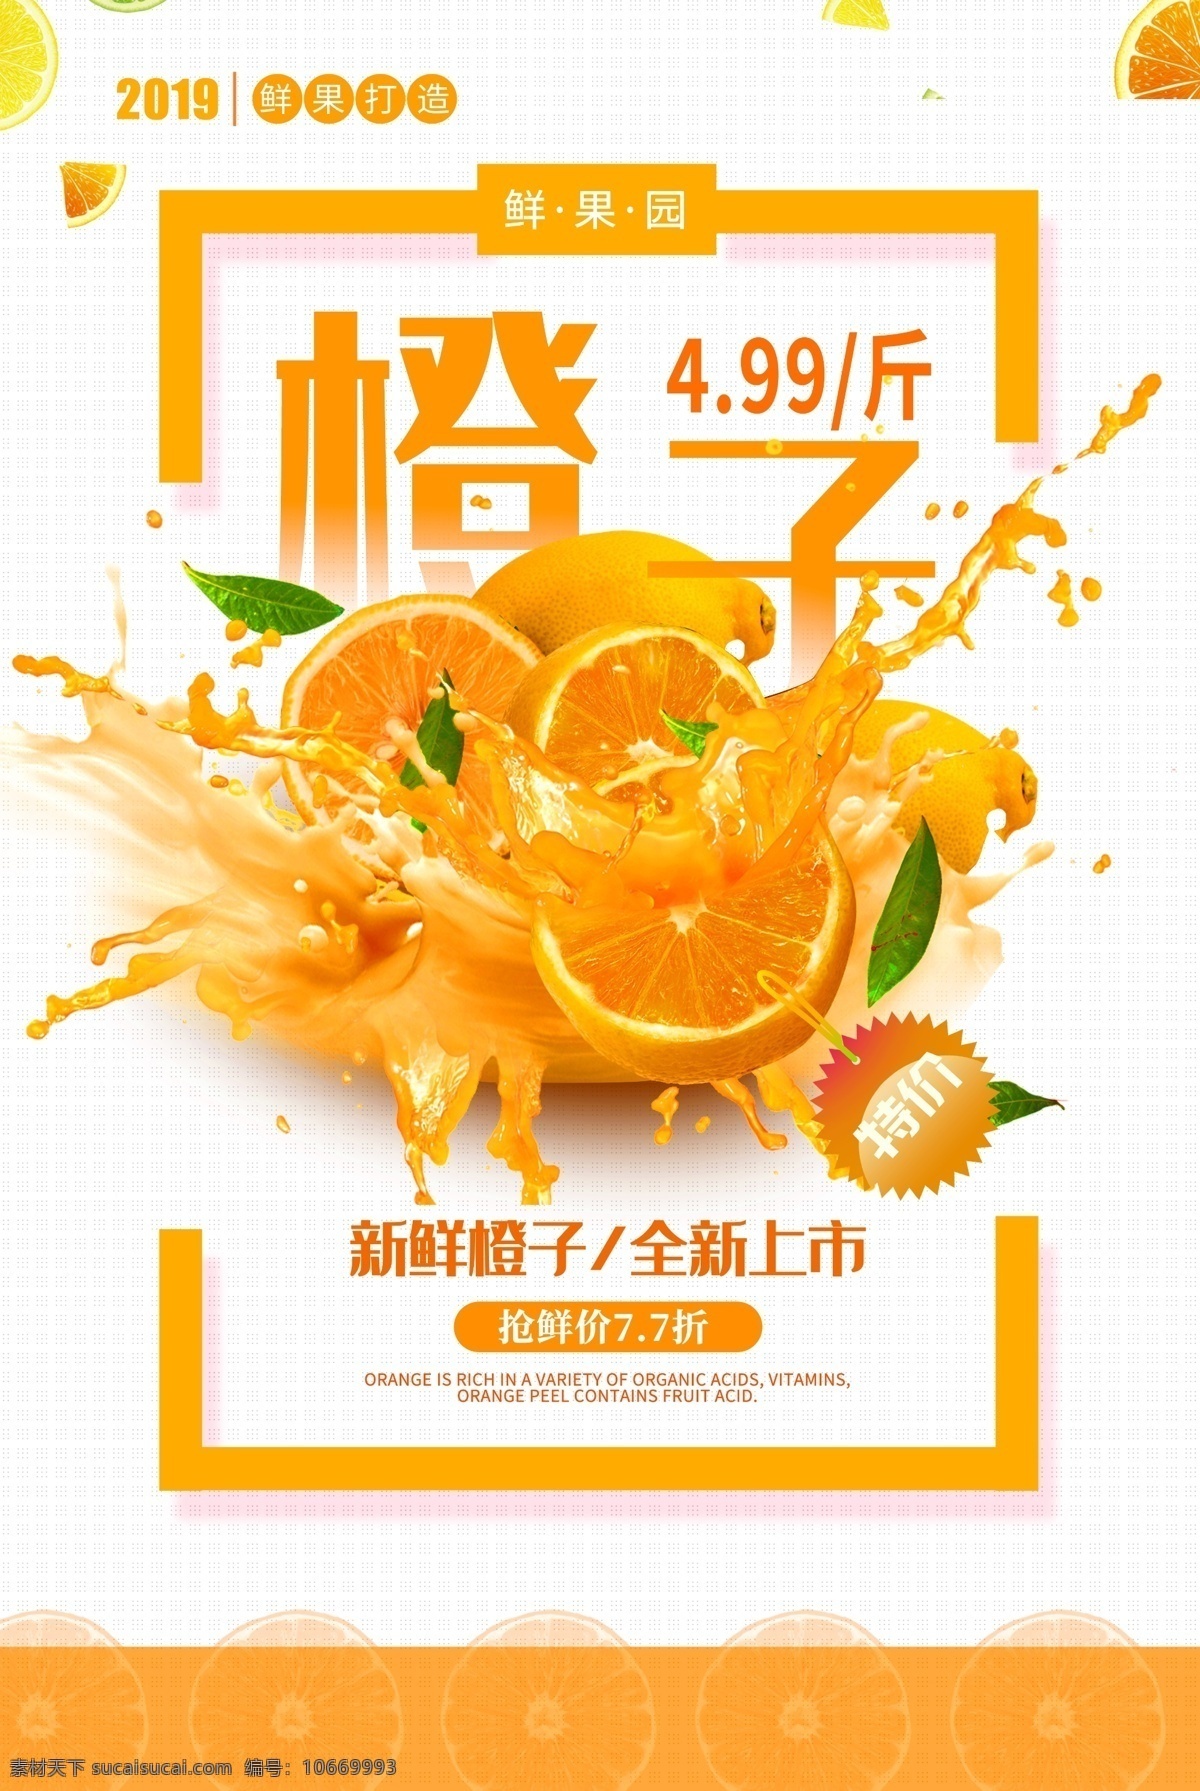 橙子 水果 活动 宣传海报 宣传 海报 饮料 饮品 甜品 类